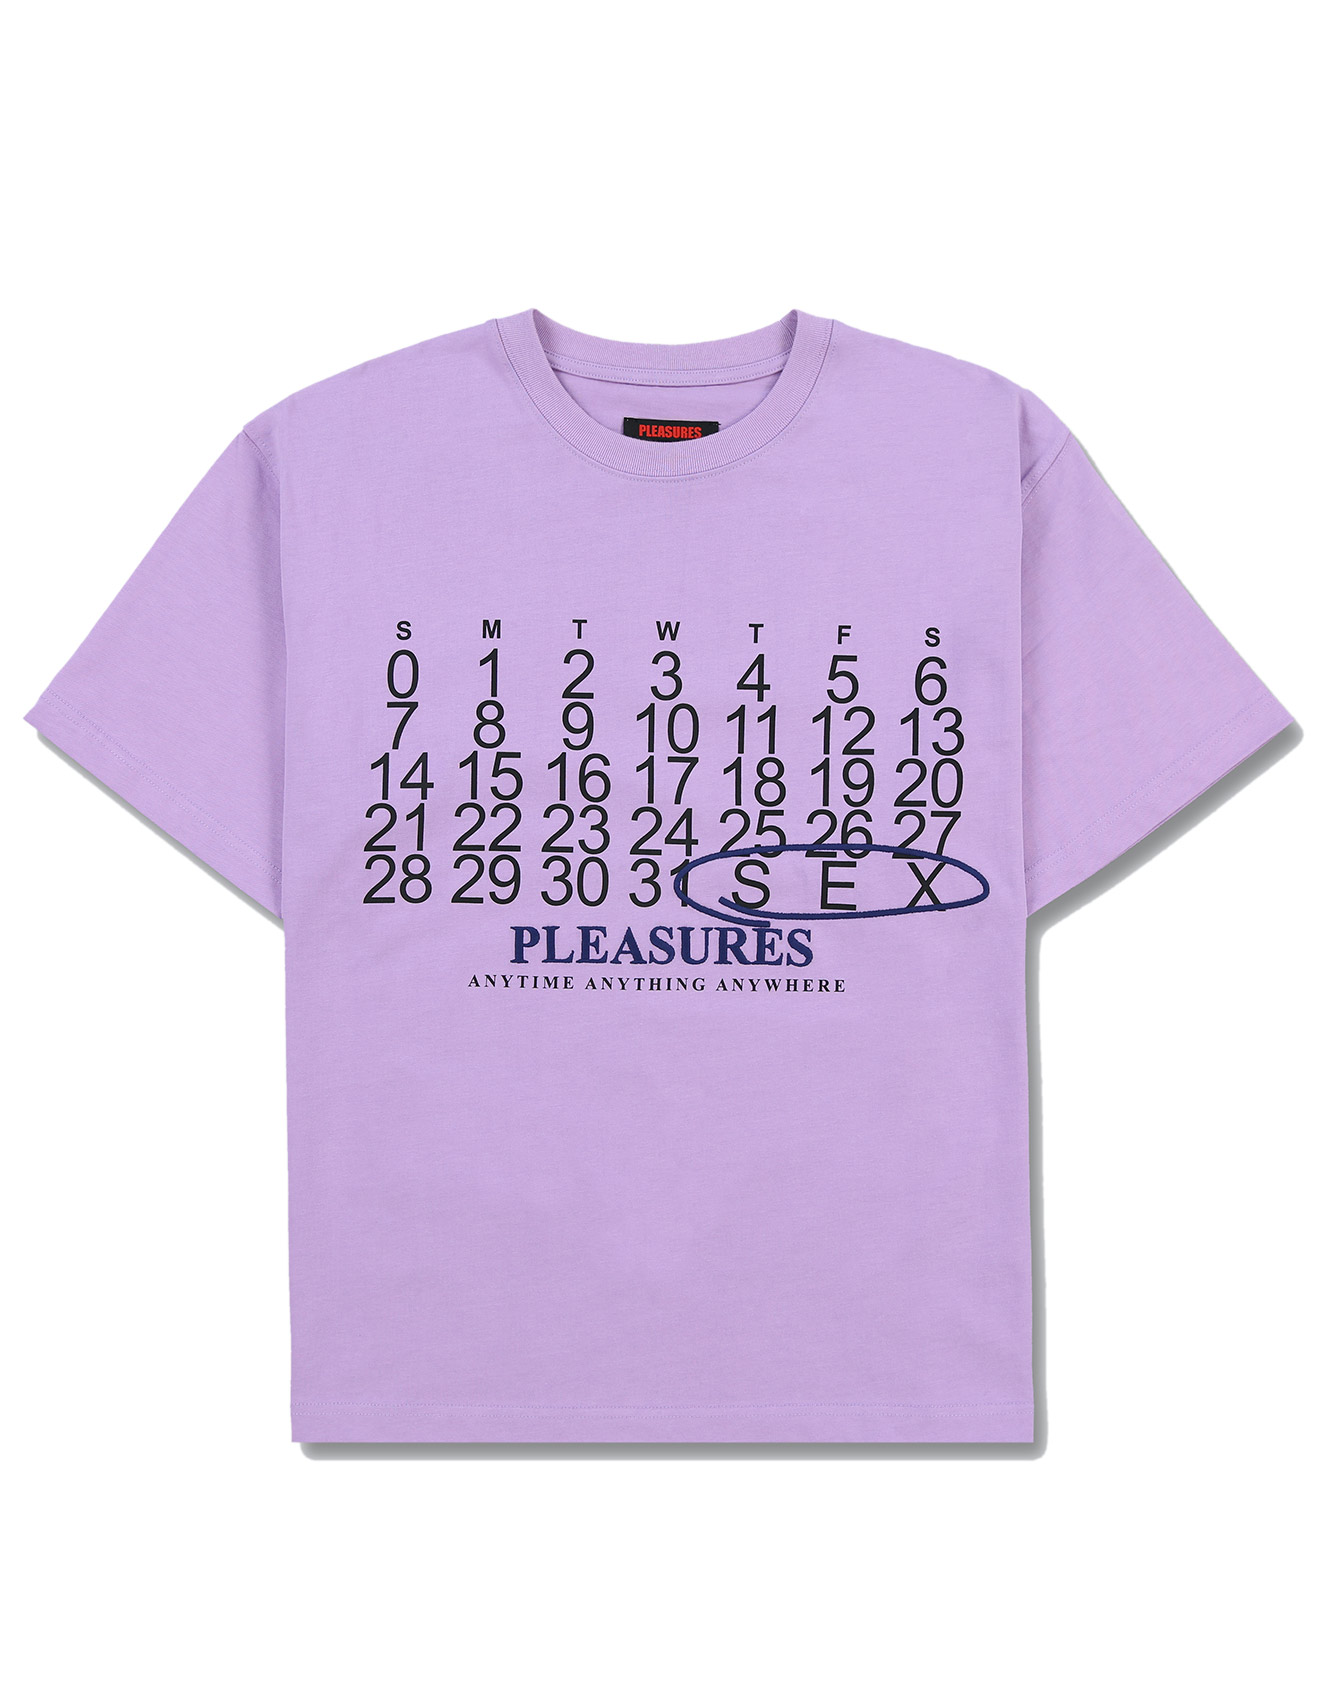 PLEASURES – Calendar heavyweight t-shirt